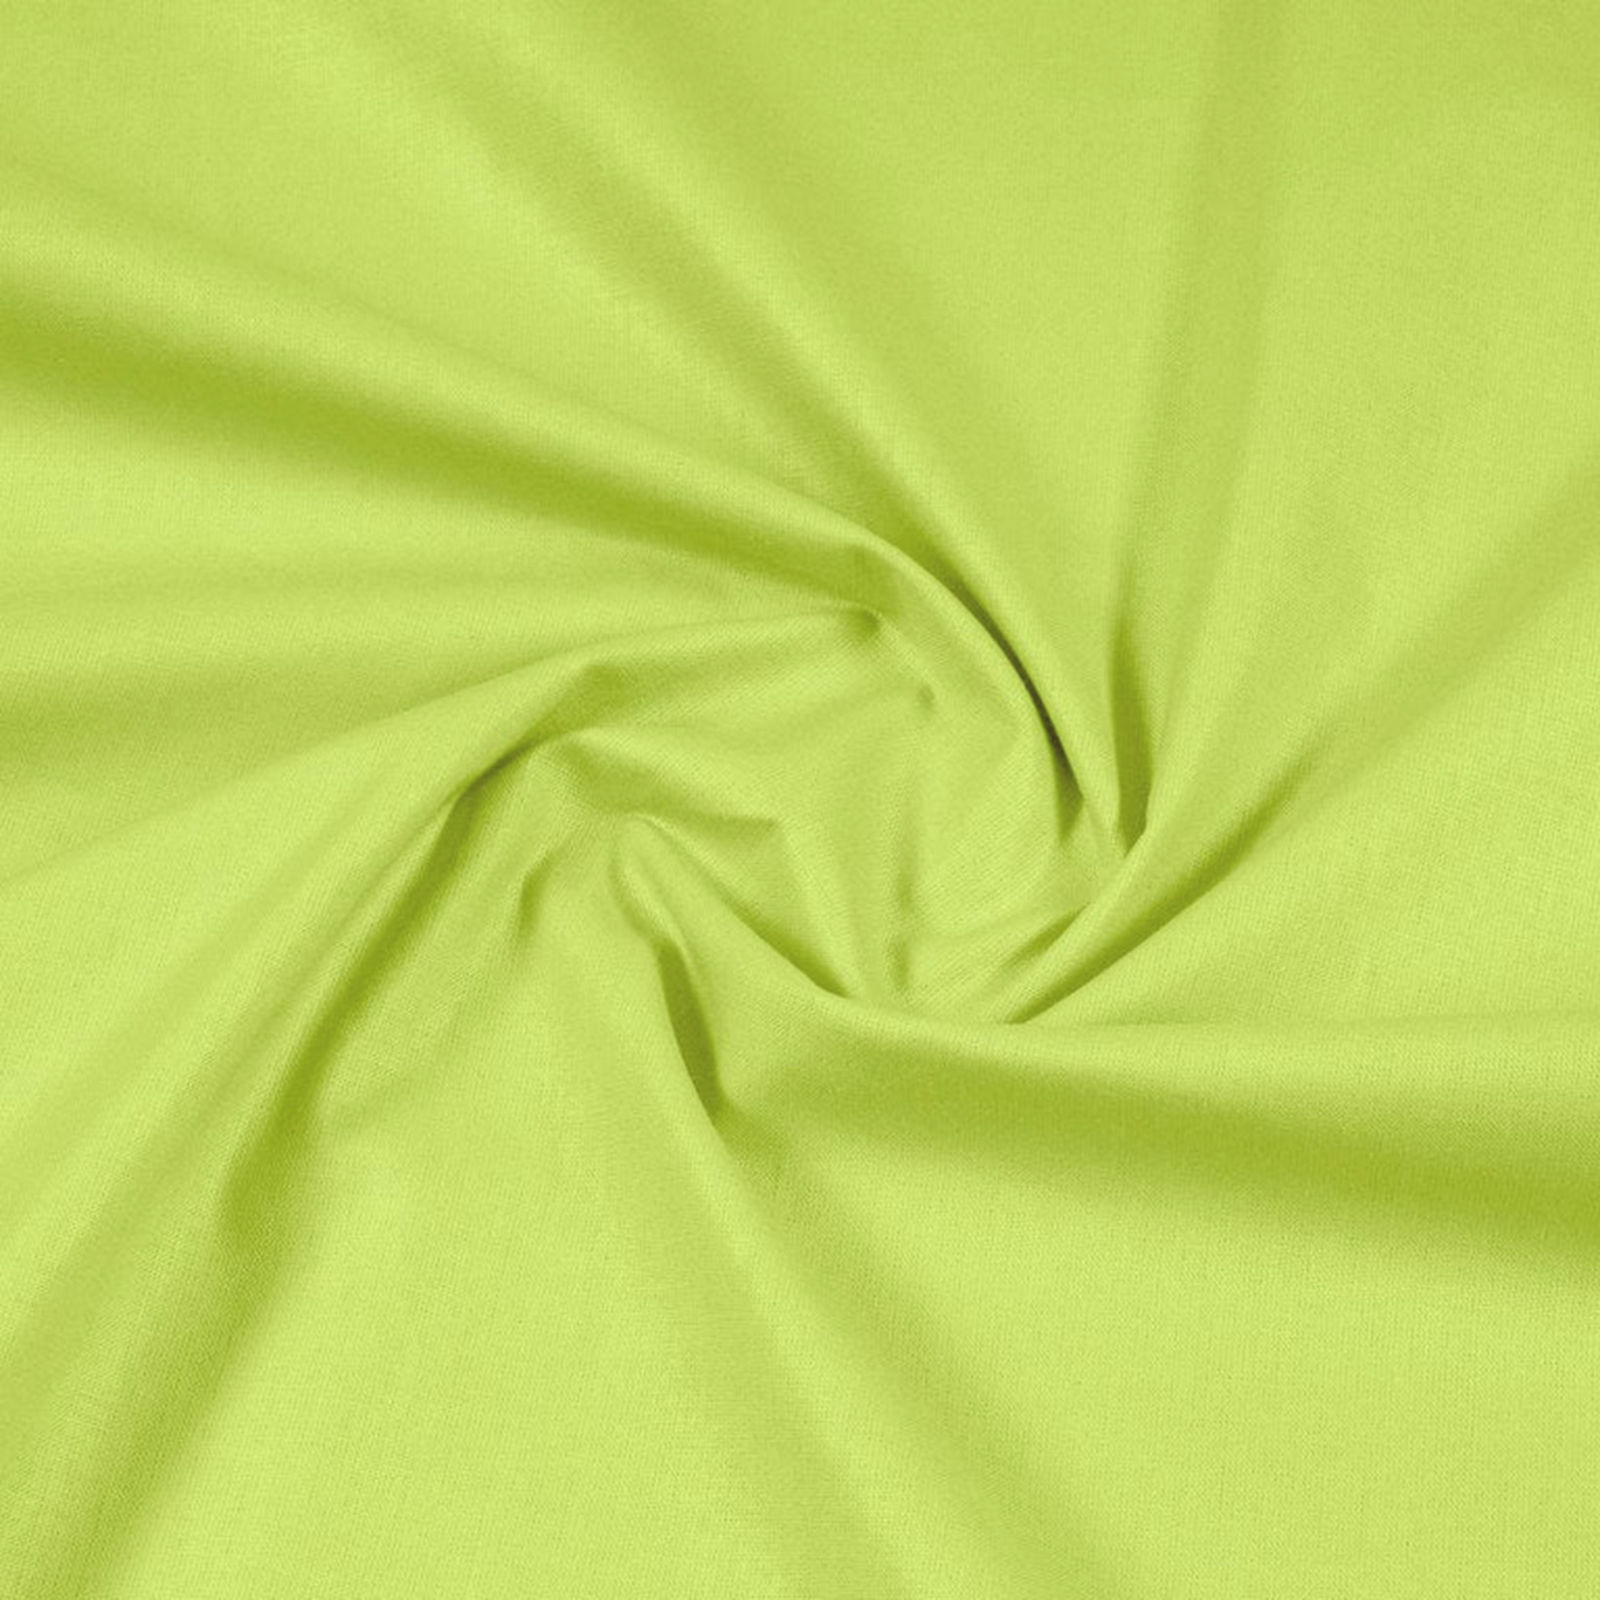 Egyszínű pamutvászon Suzy - pisztácia zöld